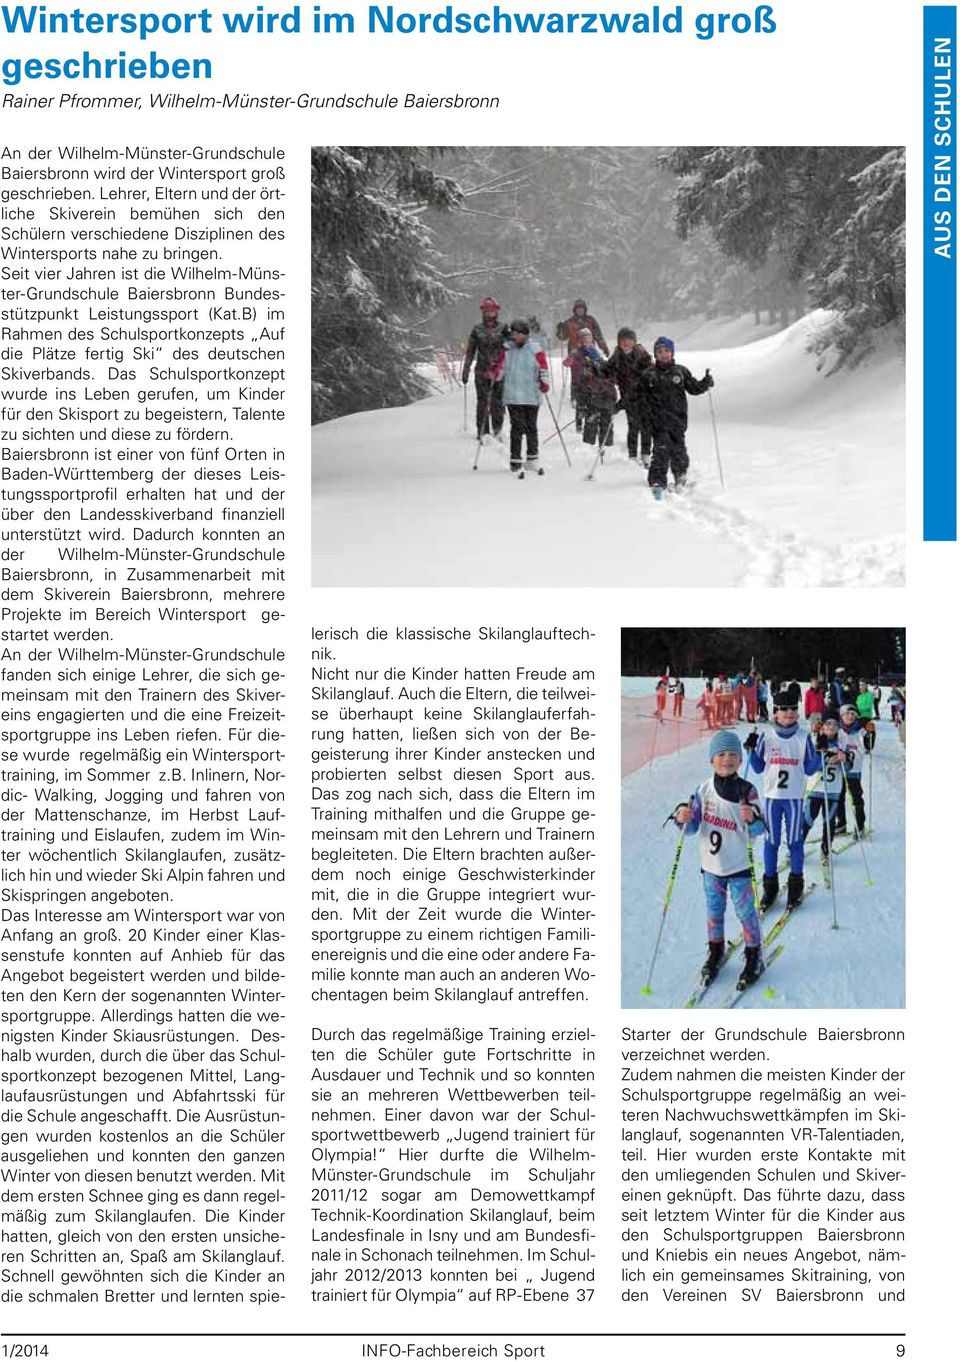 Seit vier Jahren ist die Wilhelm-Münster-Grundschule Baiersbronn Bundesstützpunkt Leistungssport (Kat.B) im Rahmen des Schulsportkonzepts Auf die Plätze fertig Ski des deutschen Skiverbands.